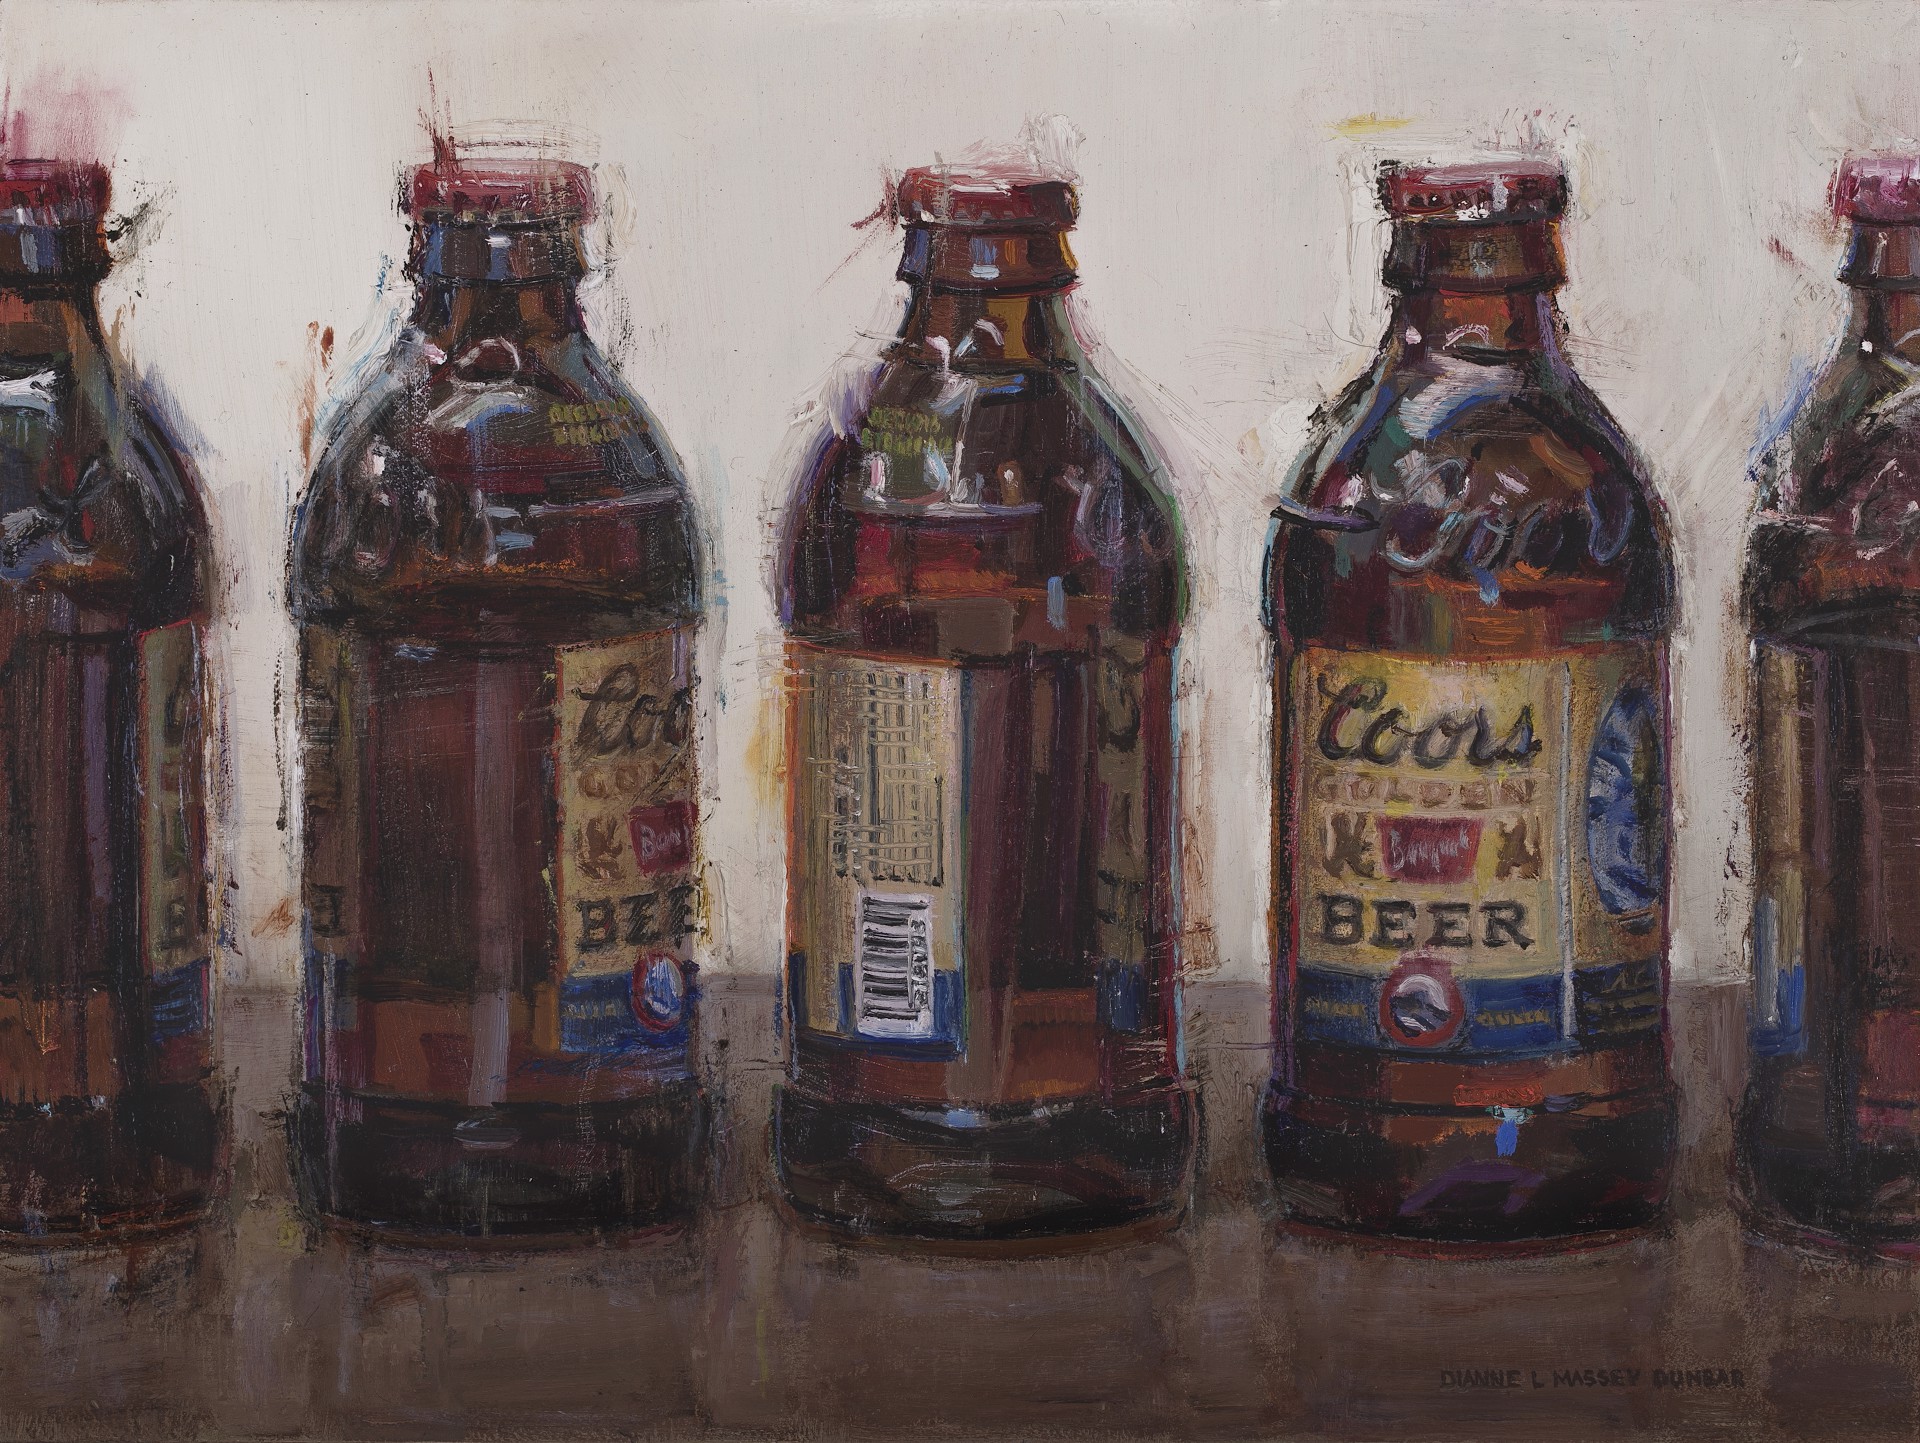 Coors Banquet Bottles by Dianne L Massey Dunbar